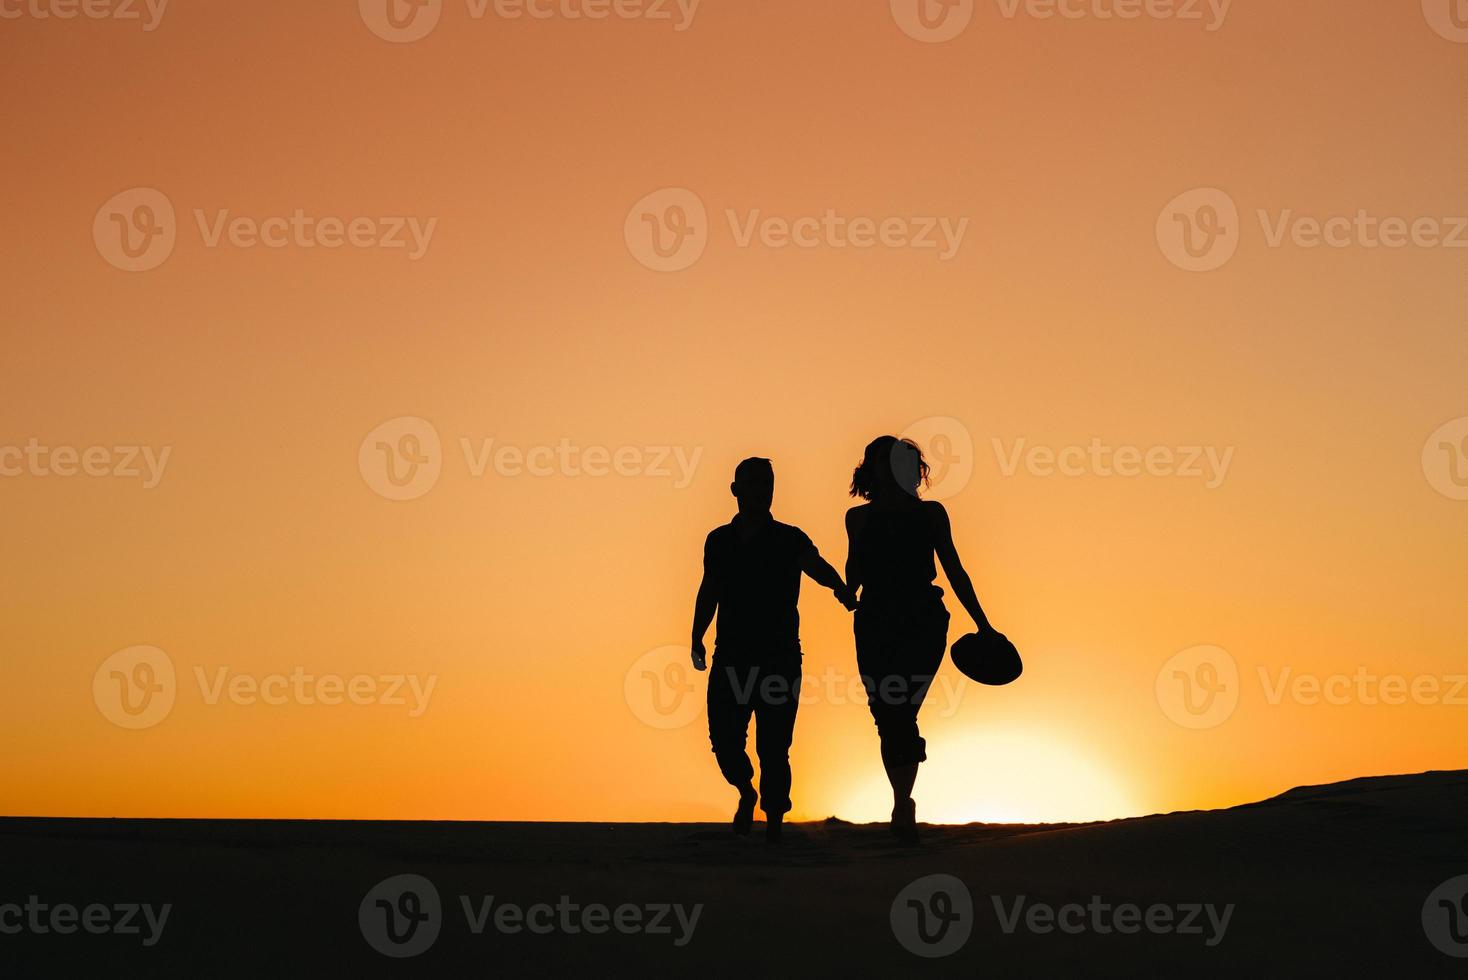 silhouetten van een gelukkig jong koppel op een achtergrond van oranje zonsondergang in de zandwoestijn foto